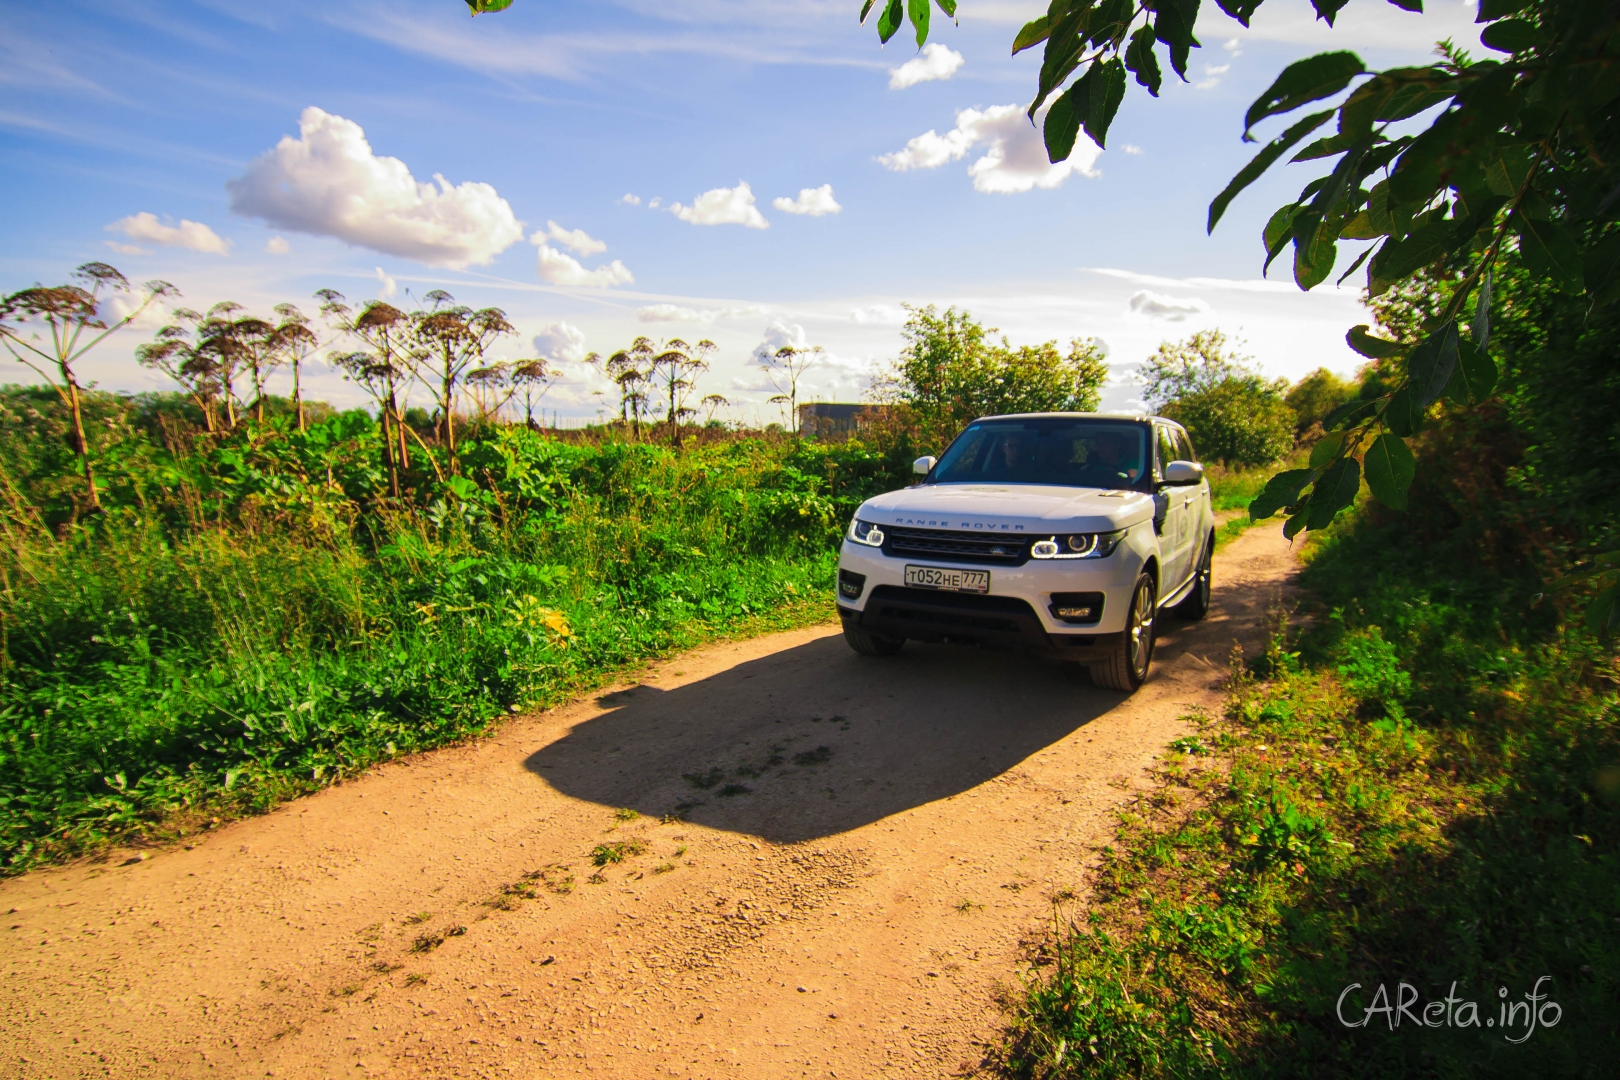 Универсальность во всем: Тест-драйв Range Rover Sport